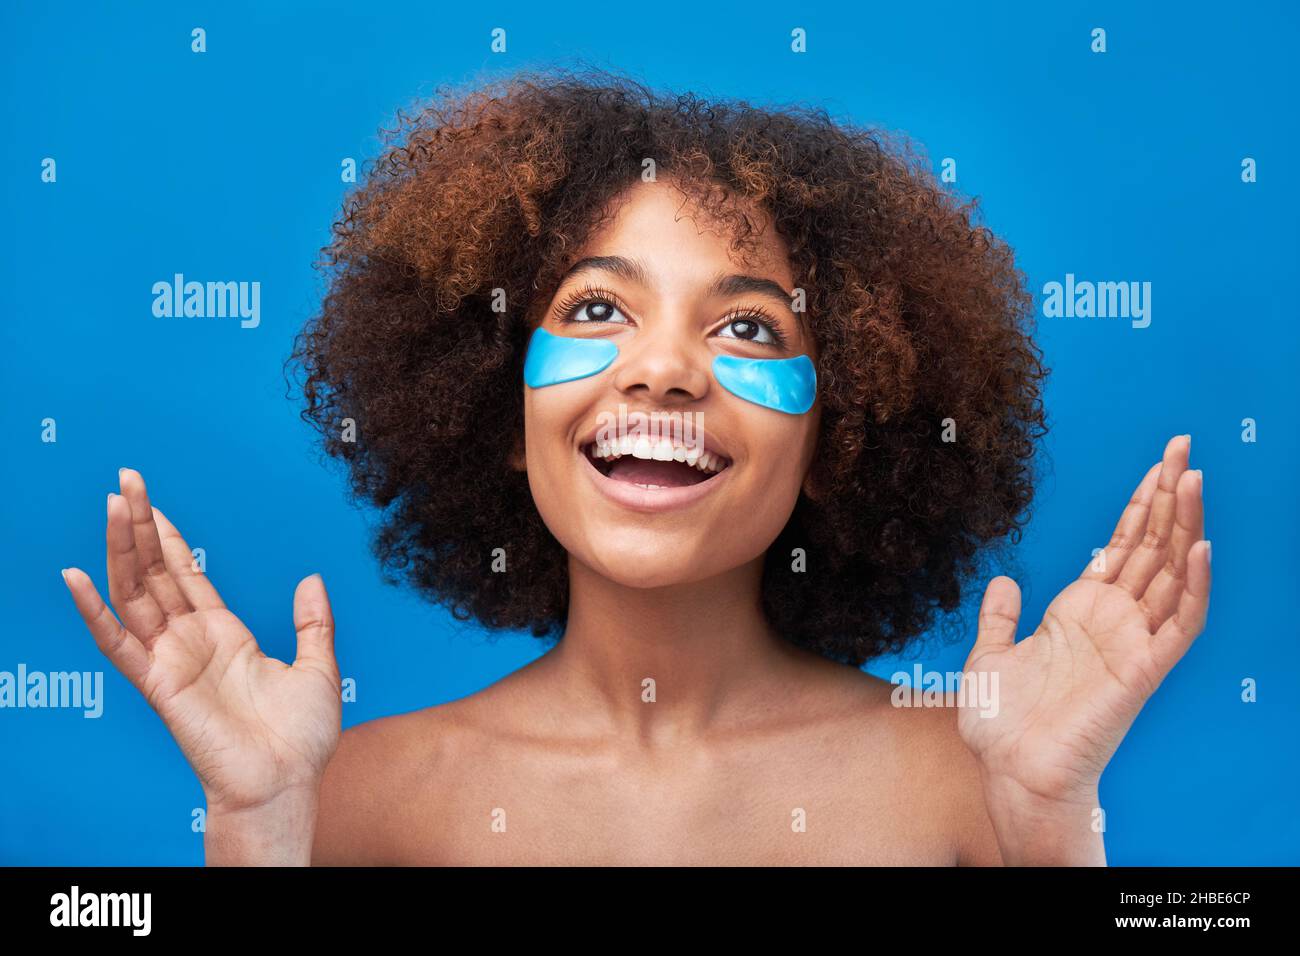 Junge Frau mit langen lockigen Brünetten Haaren posiert mit breitem Lächeln und blauen Flecken unter den Augen gegen helle Studiowand Nahaufnahme Stockfoto